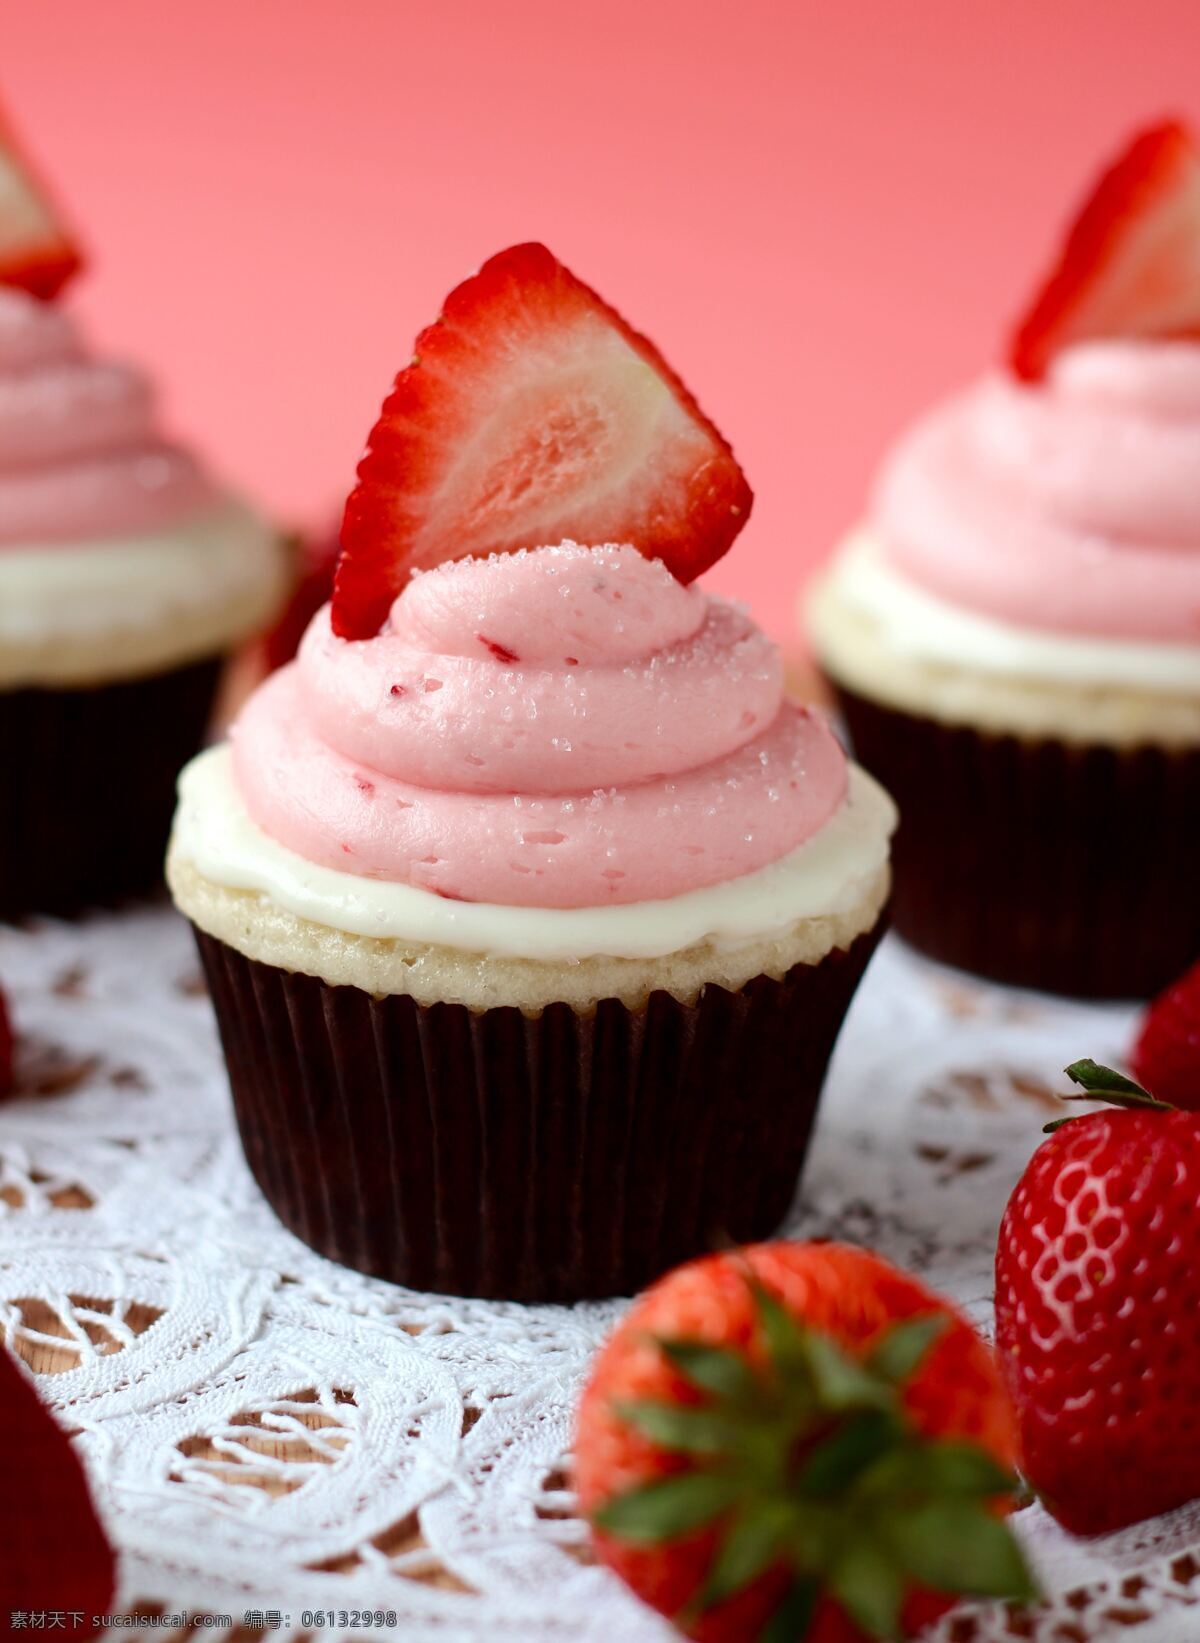 草莓纸杯蛋糕 草莓味 纸杯蛋糕 水果草莓装饰 西餐美食 餐饮美食